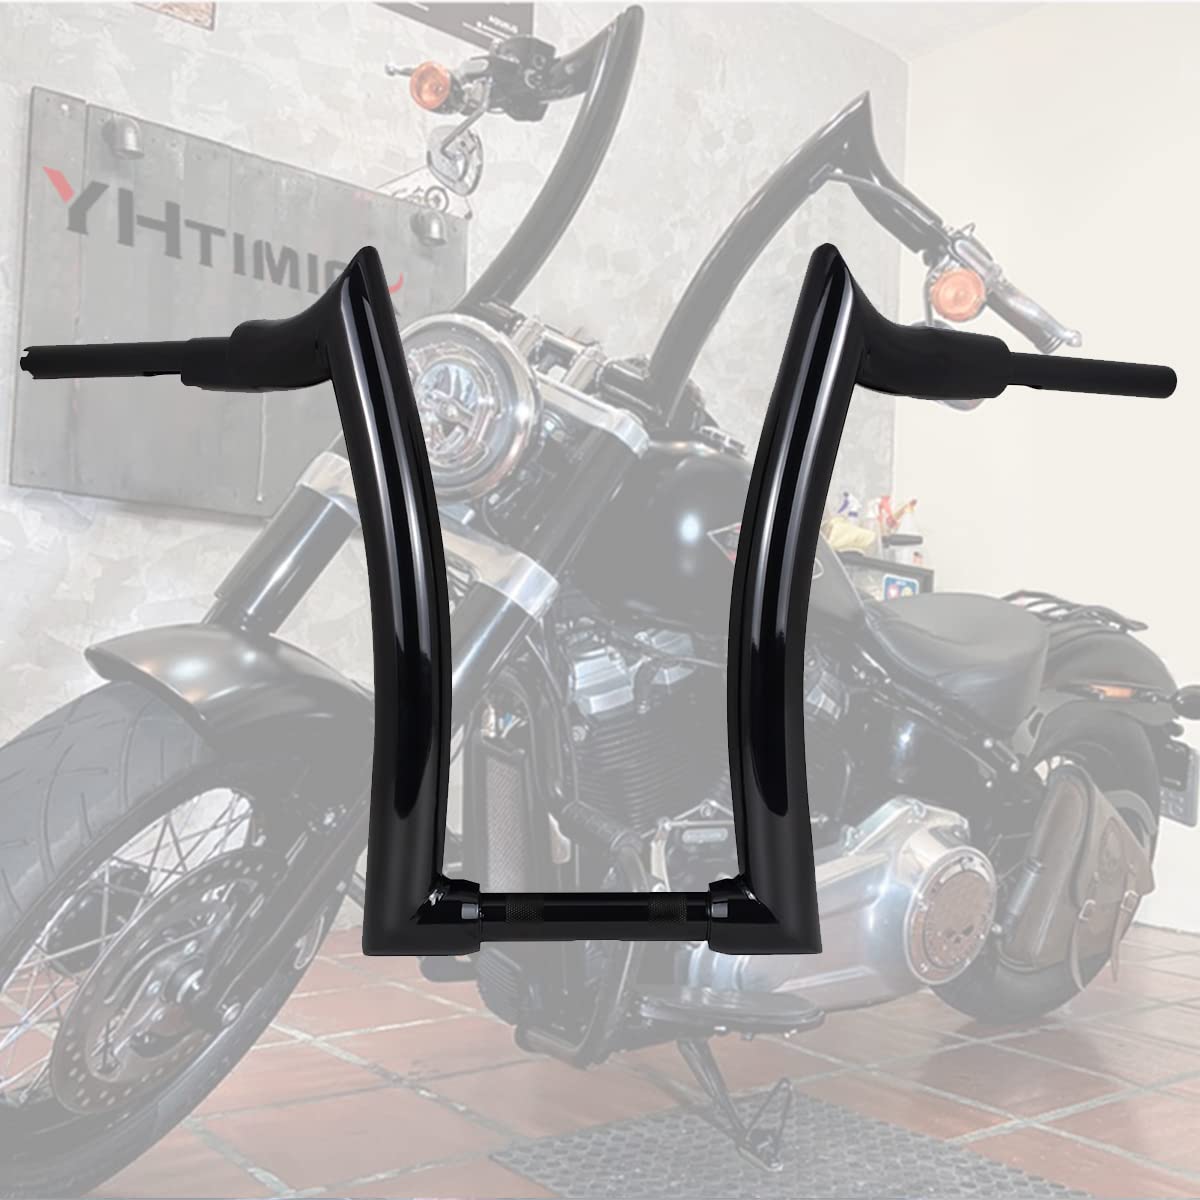 16" Rise 2" Fat Motorrad Lenker Glänzend Schwarze Sharp Corner Hanger Für Harley Softail Touring Dyna (Nicht geeignet für Dual Hydraulic Hebel) von YHTIMIOX